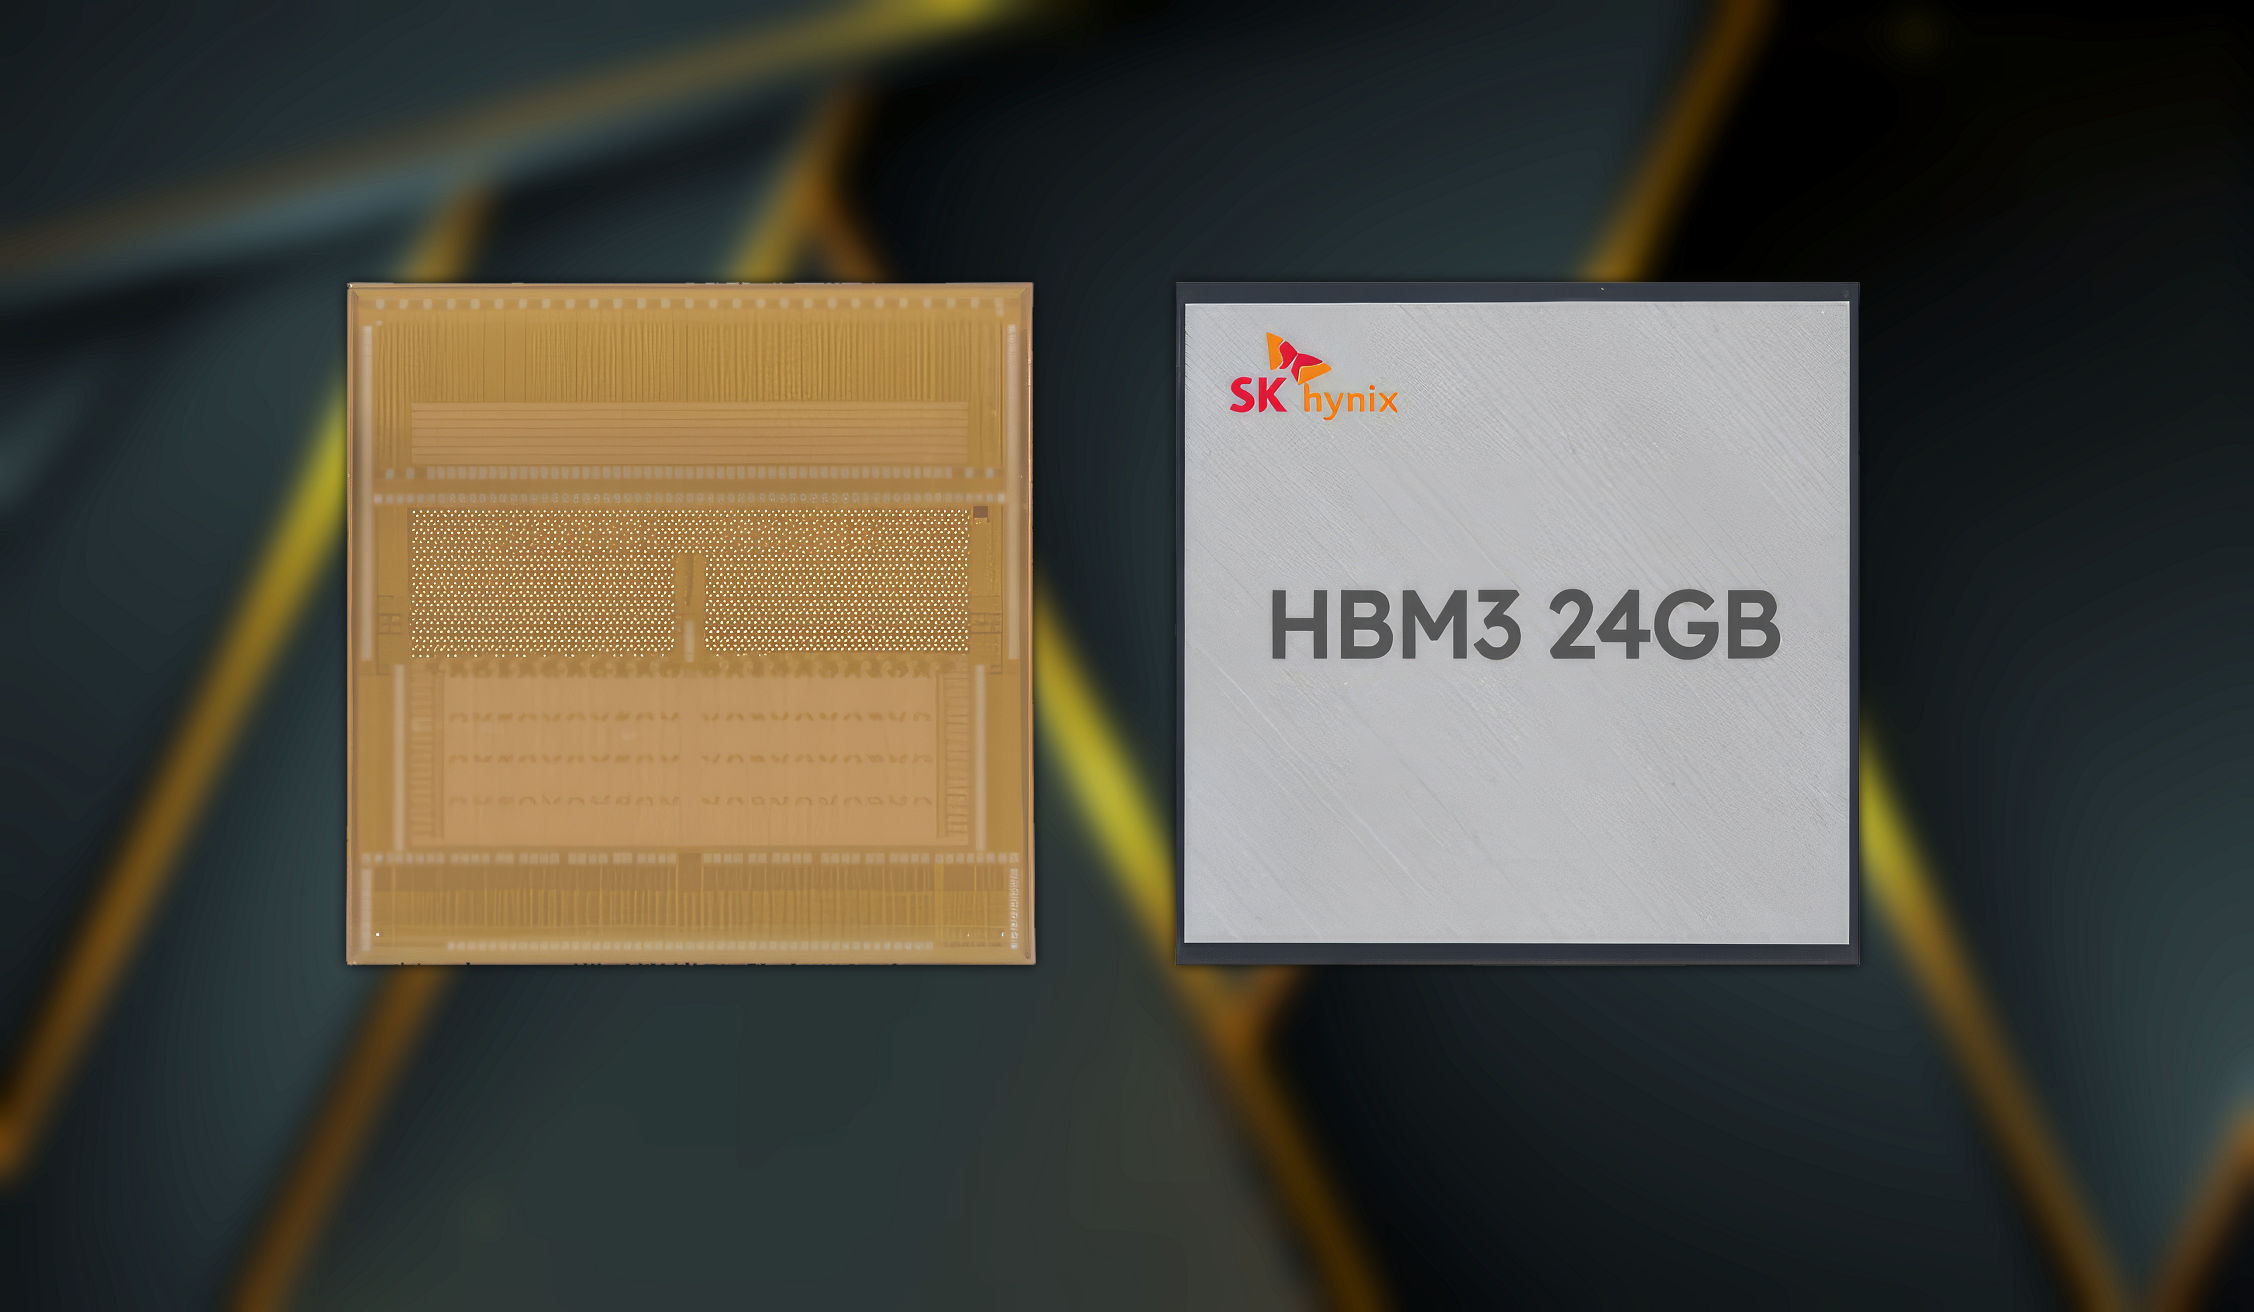 HBM3-HYNIX-HERO.jpg